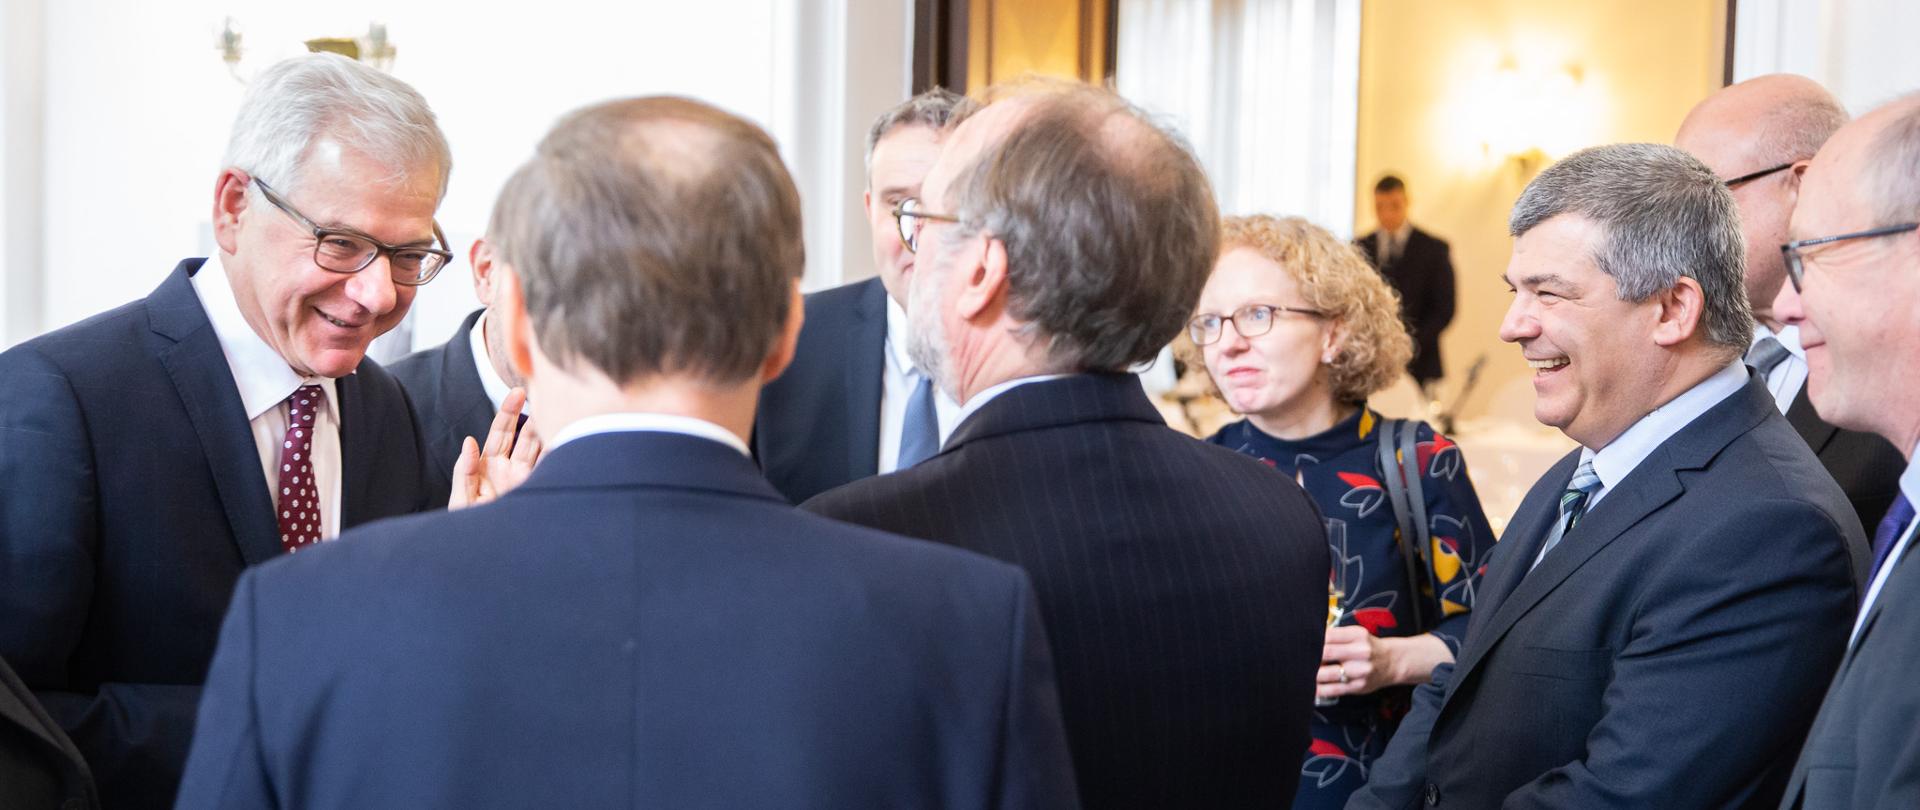 Minister Jacek Czaputowicz meets EU ambassadors 